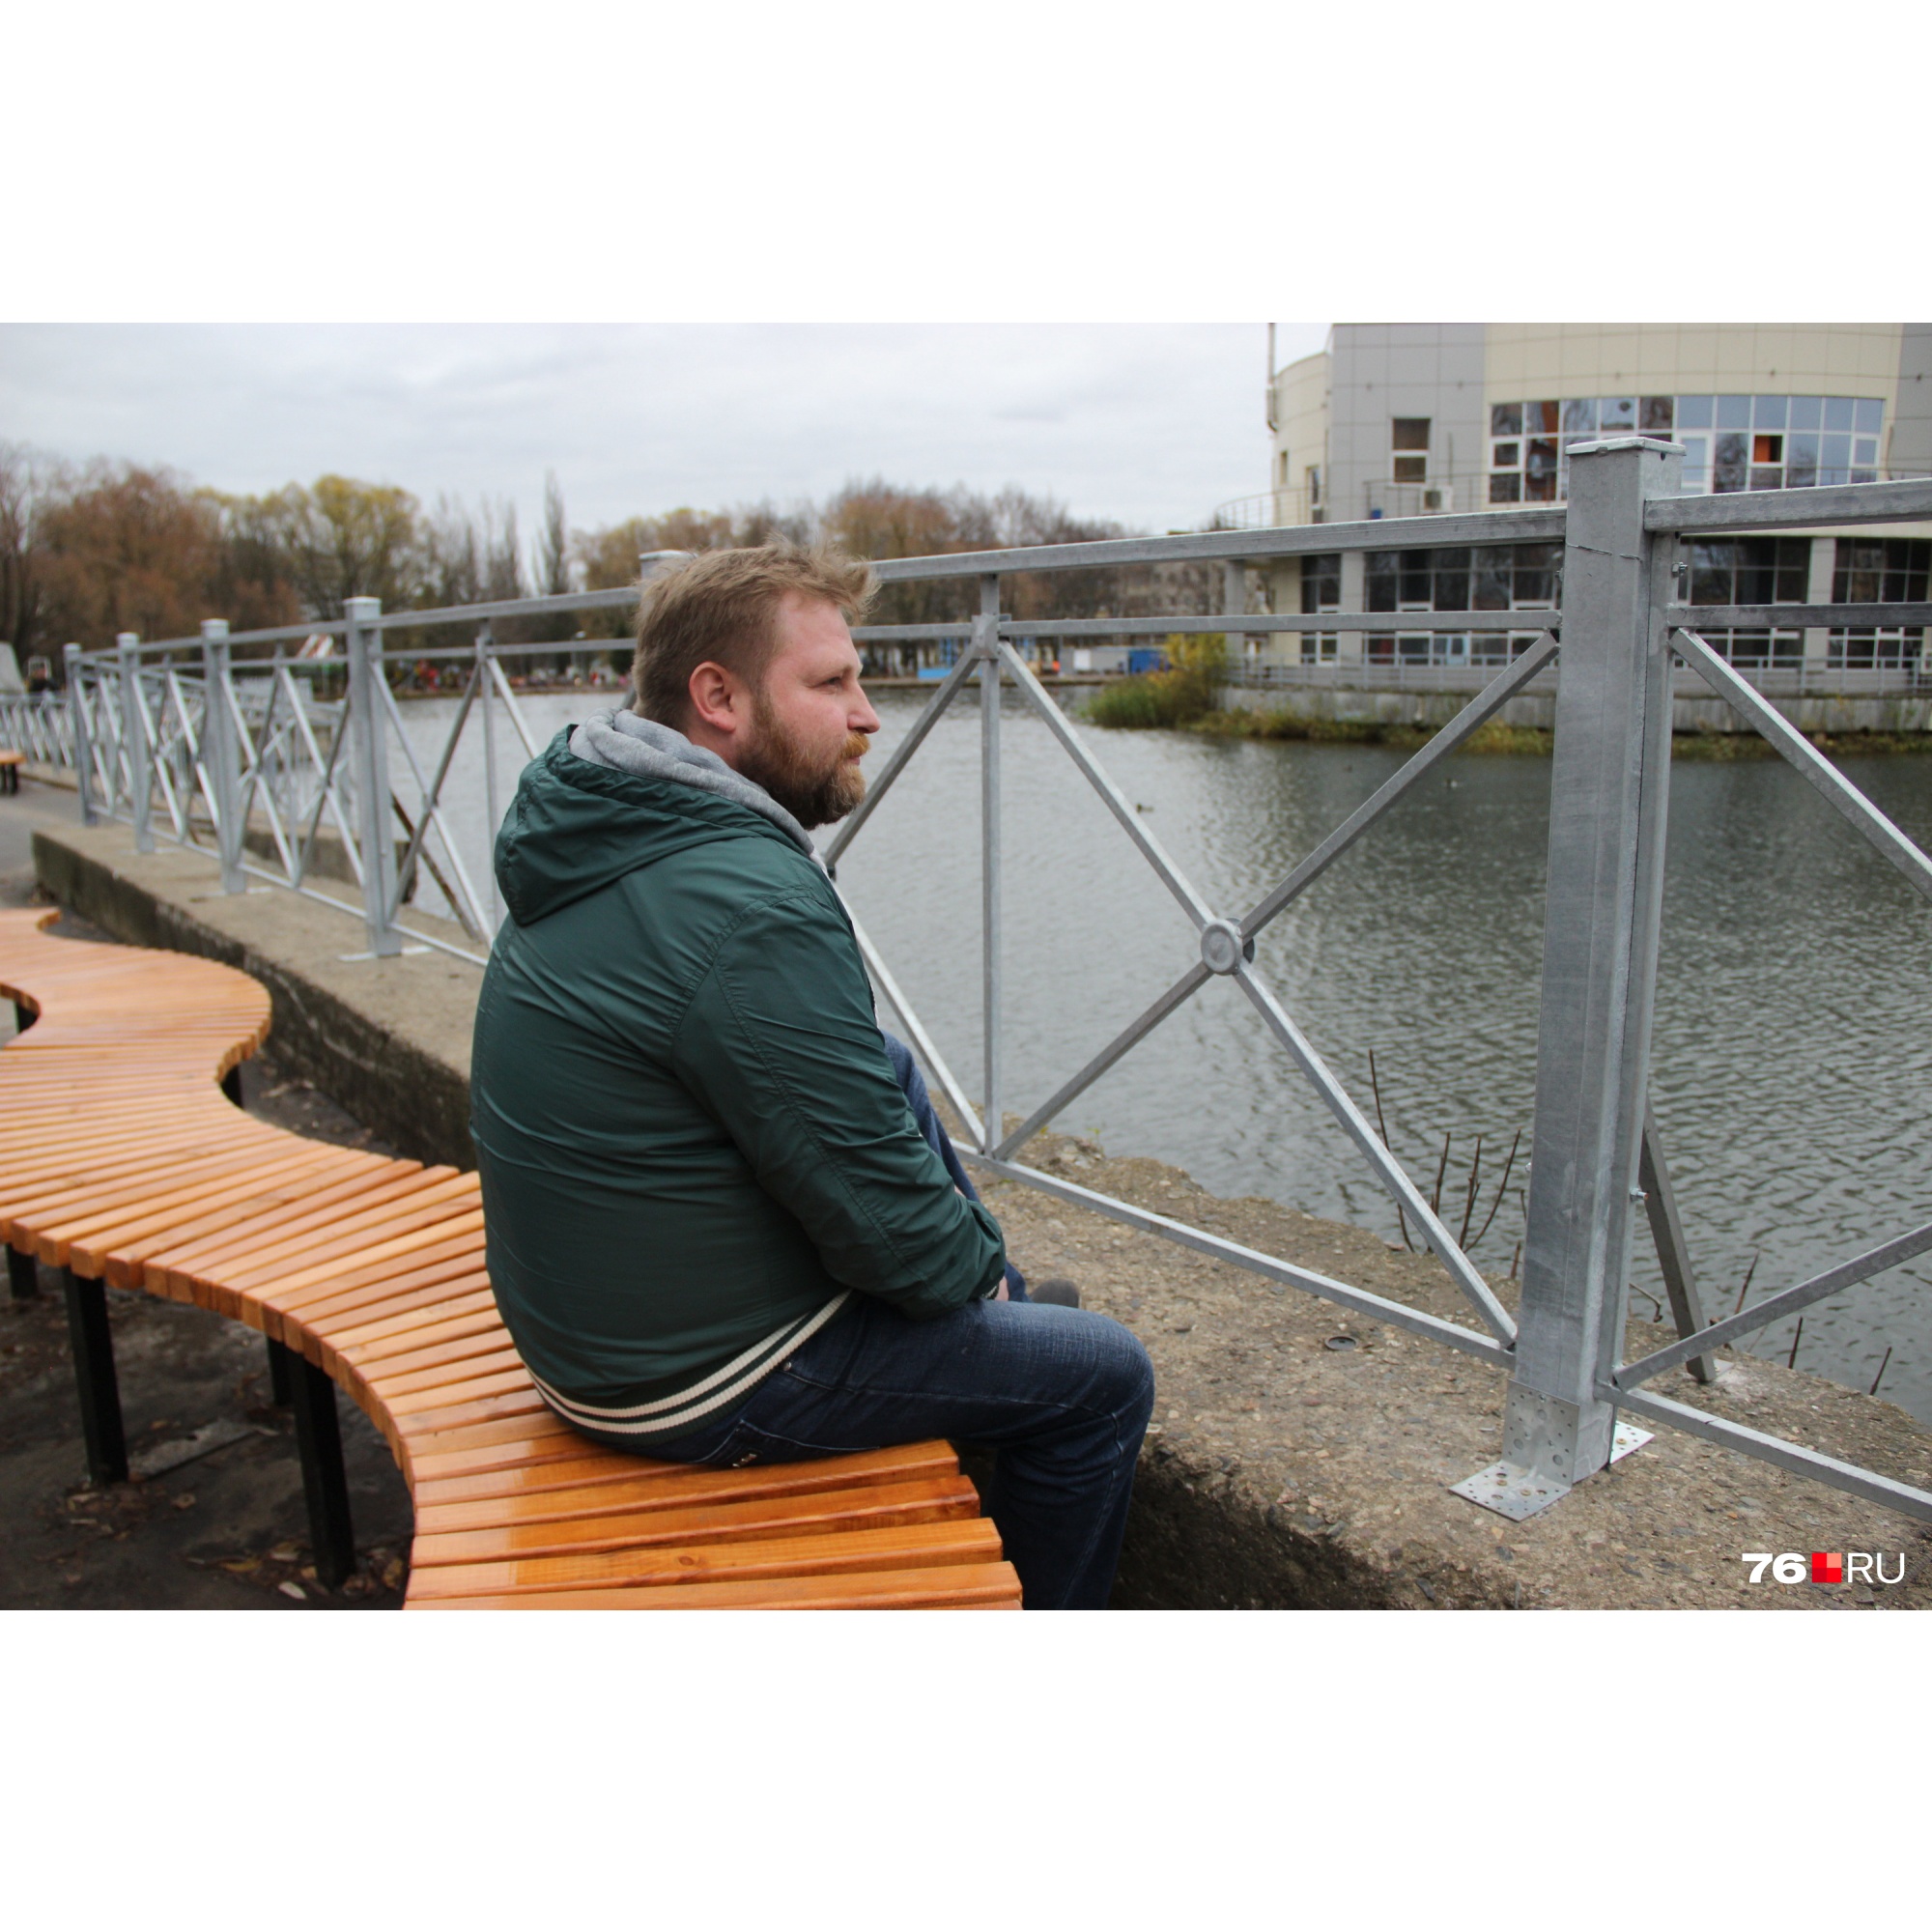 Лавки с видом на забор: как в Ярославле благоустроили парк за 30 миллионов рублей